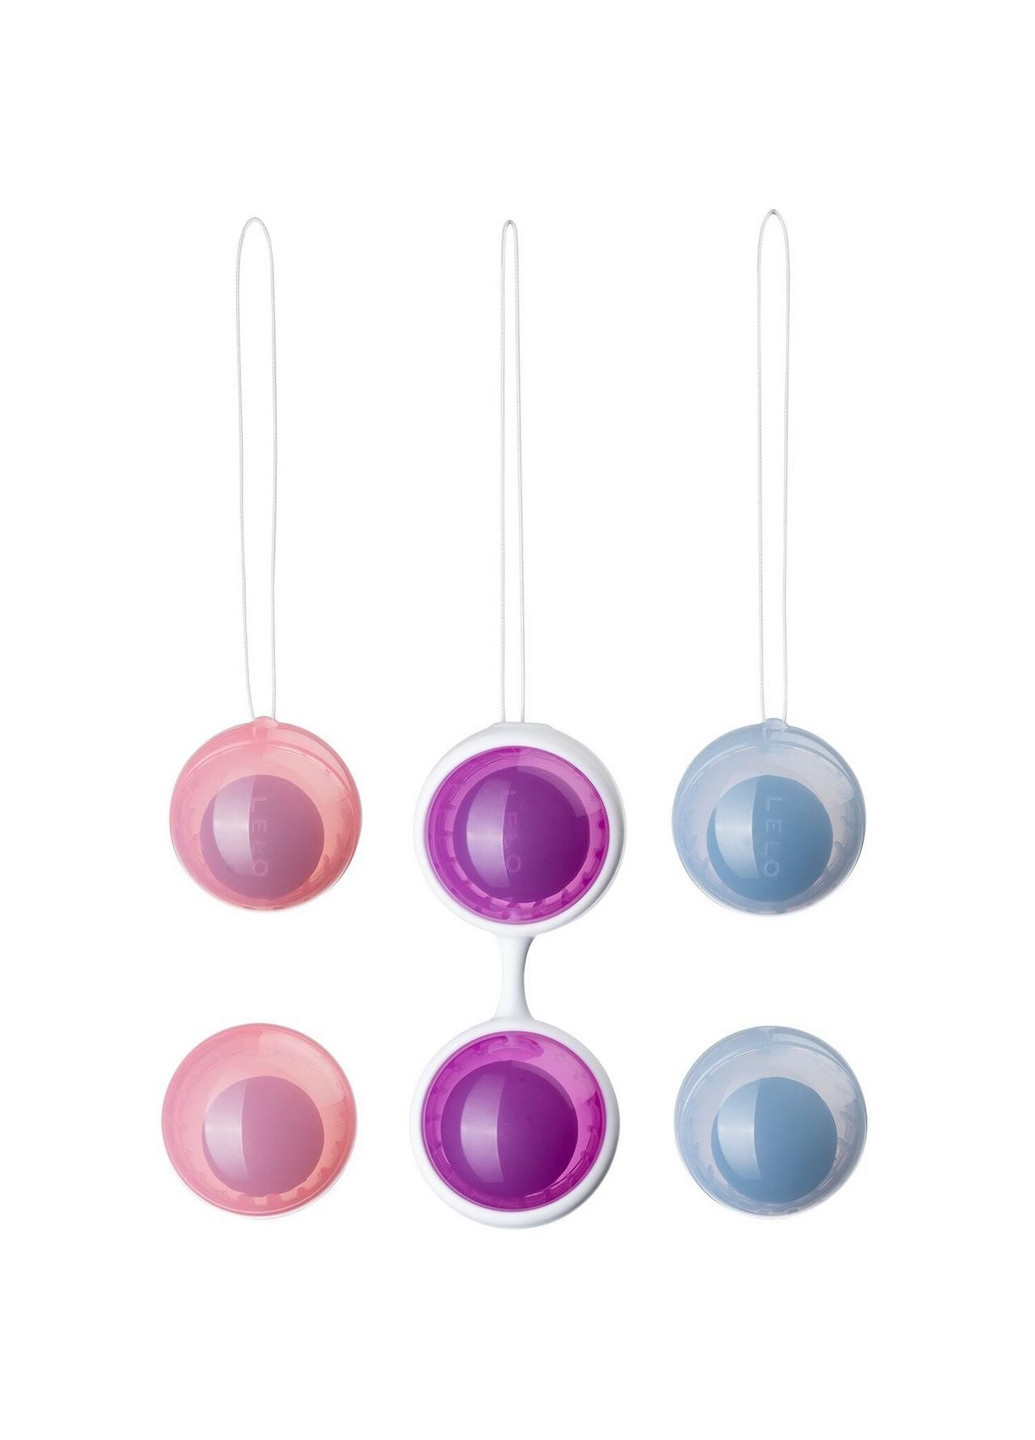 Вагинальные шарики Beads Plus Lelo (260449866)